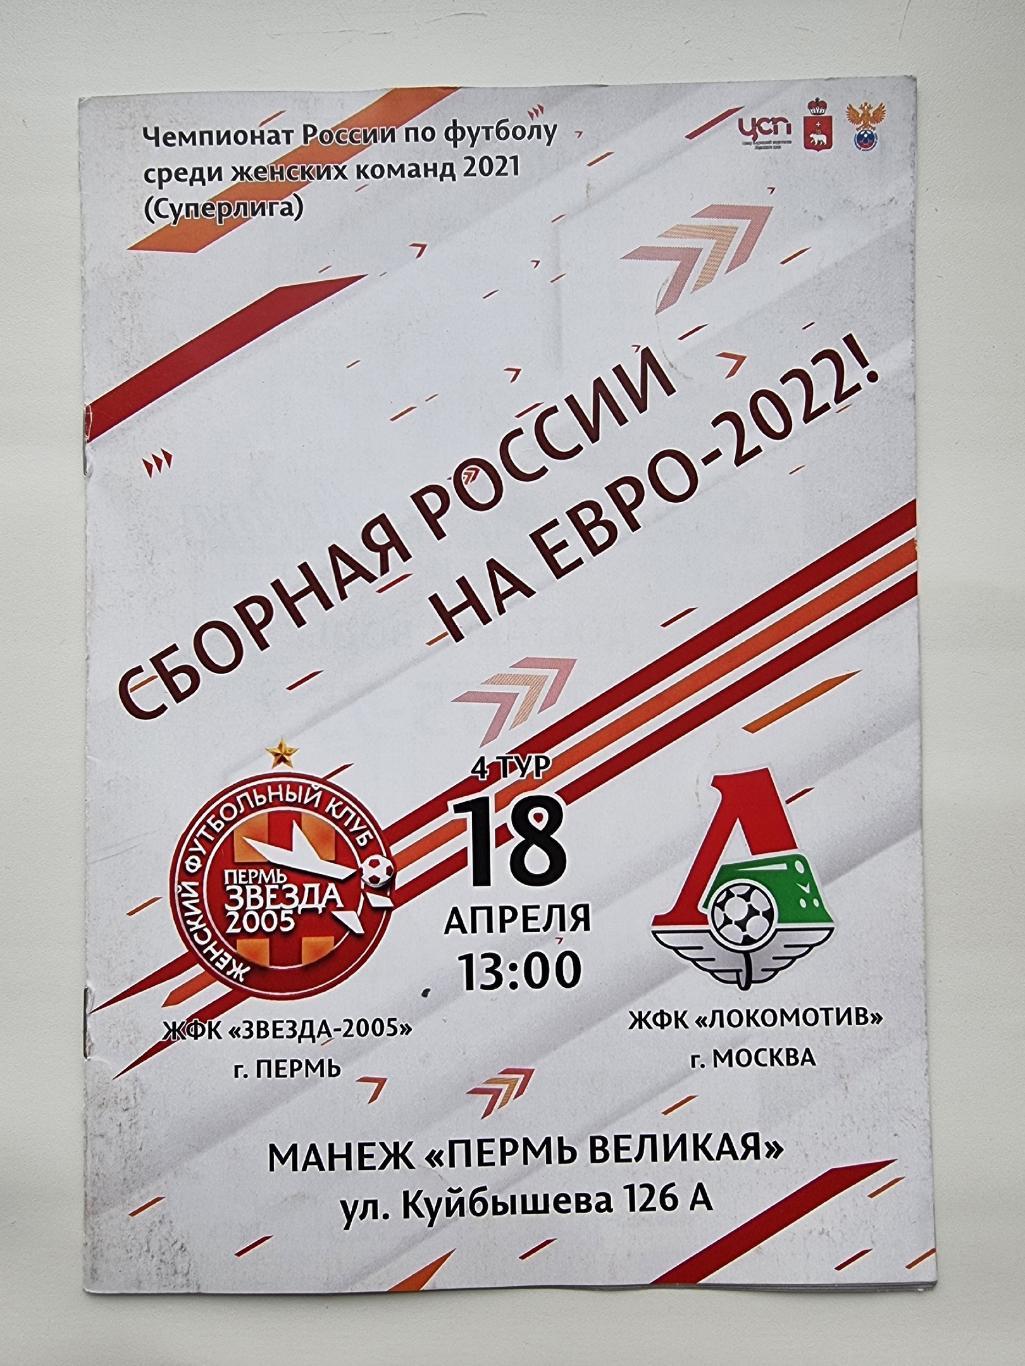 Звезда-2005 Пермь - Локомотив Москва 2021 женщины